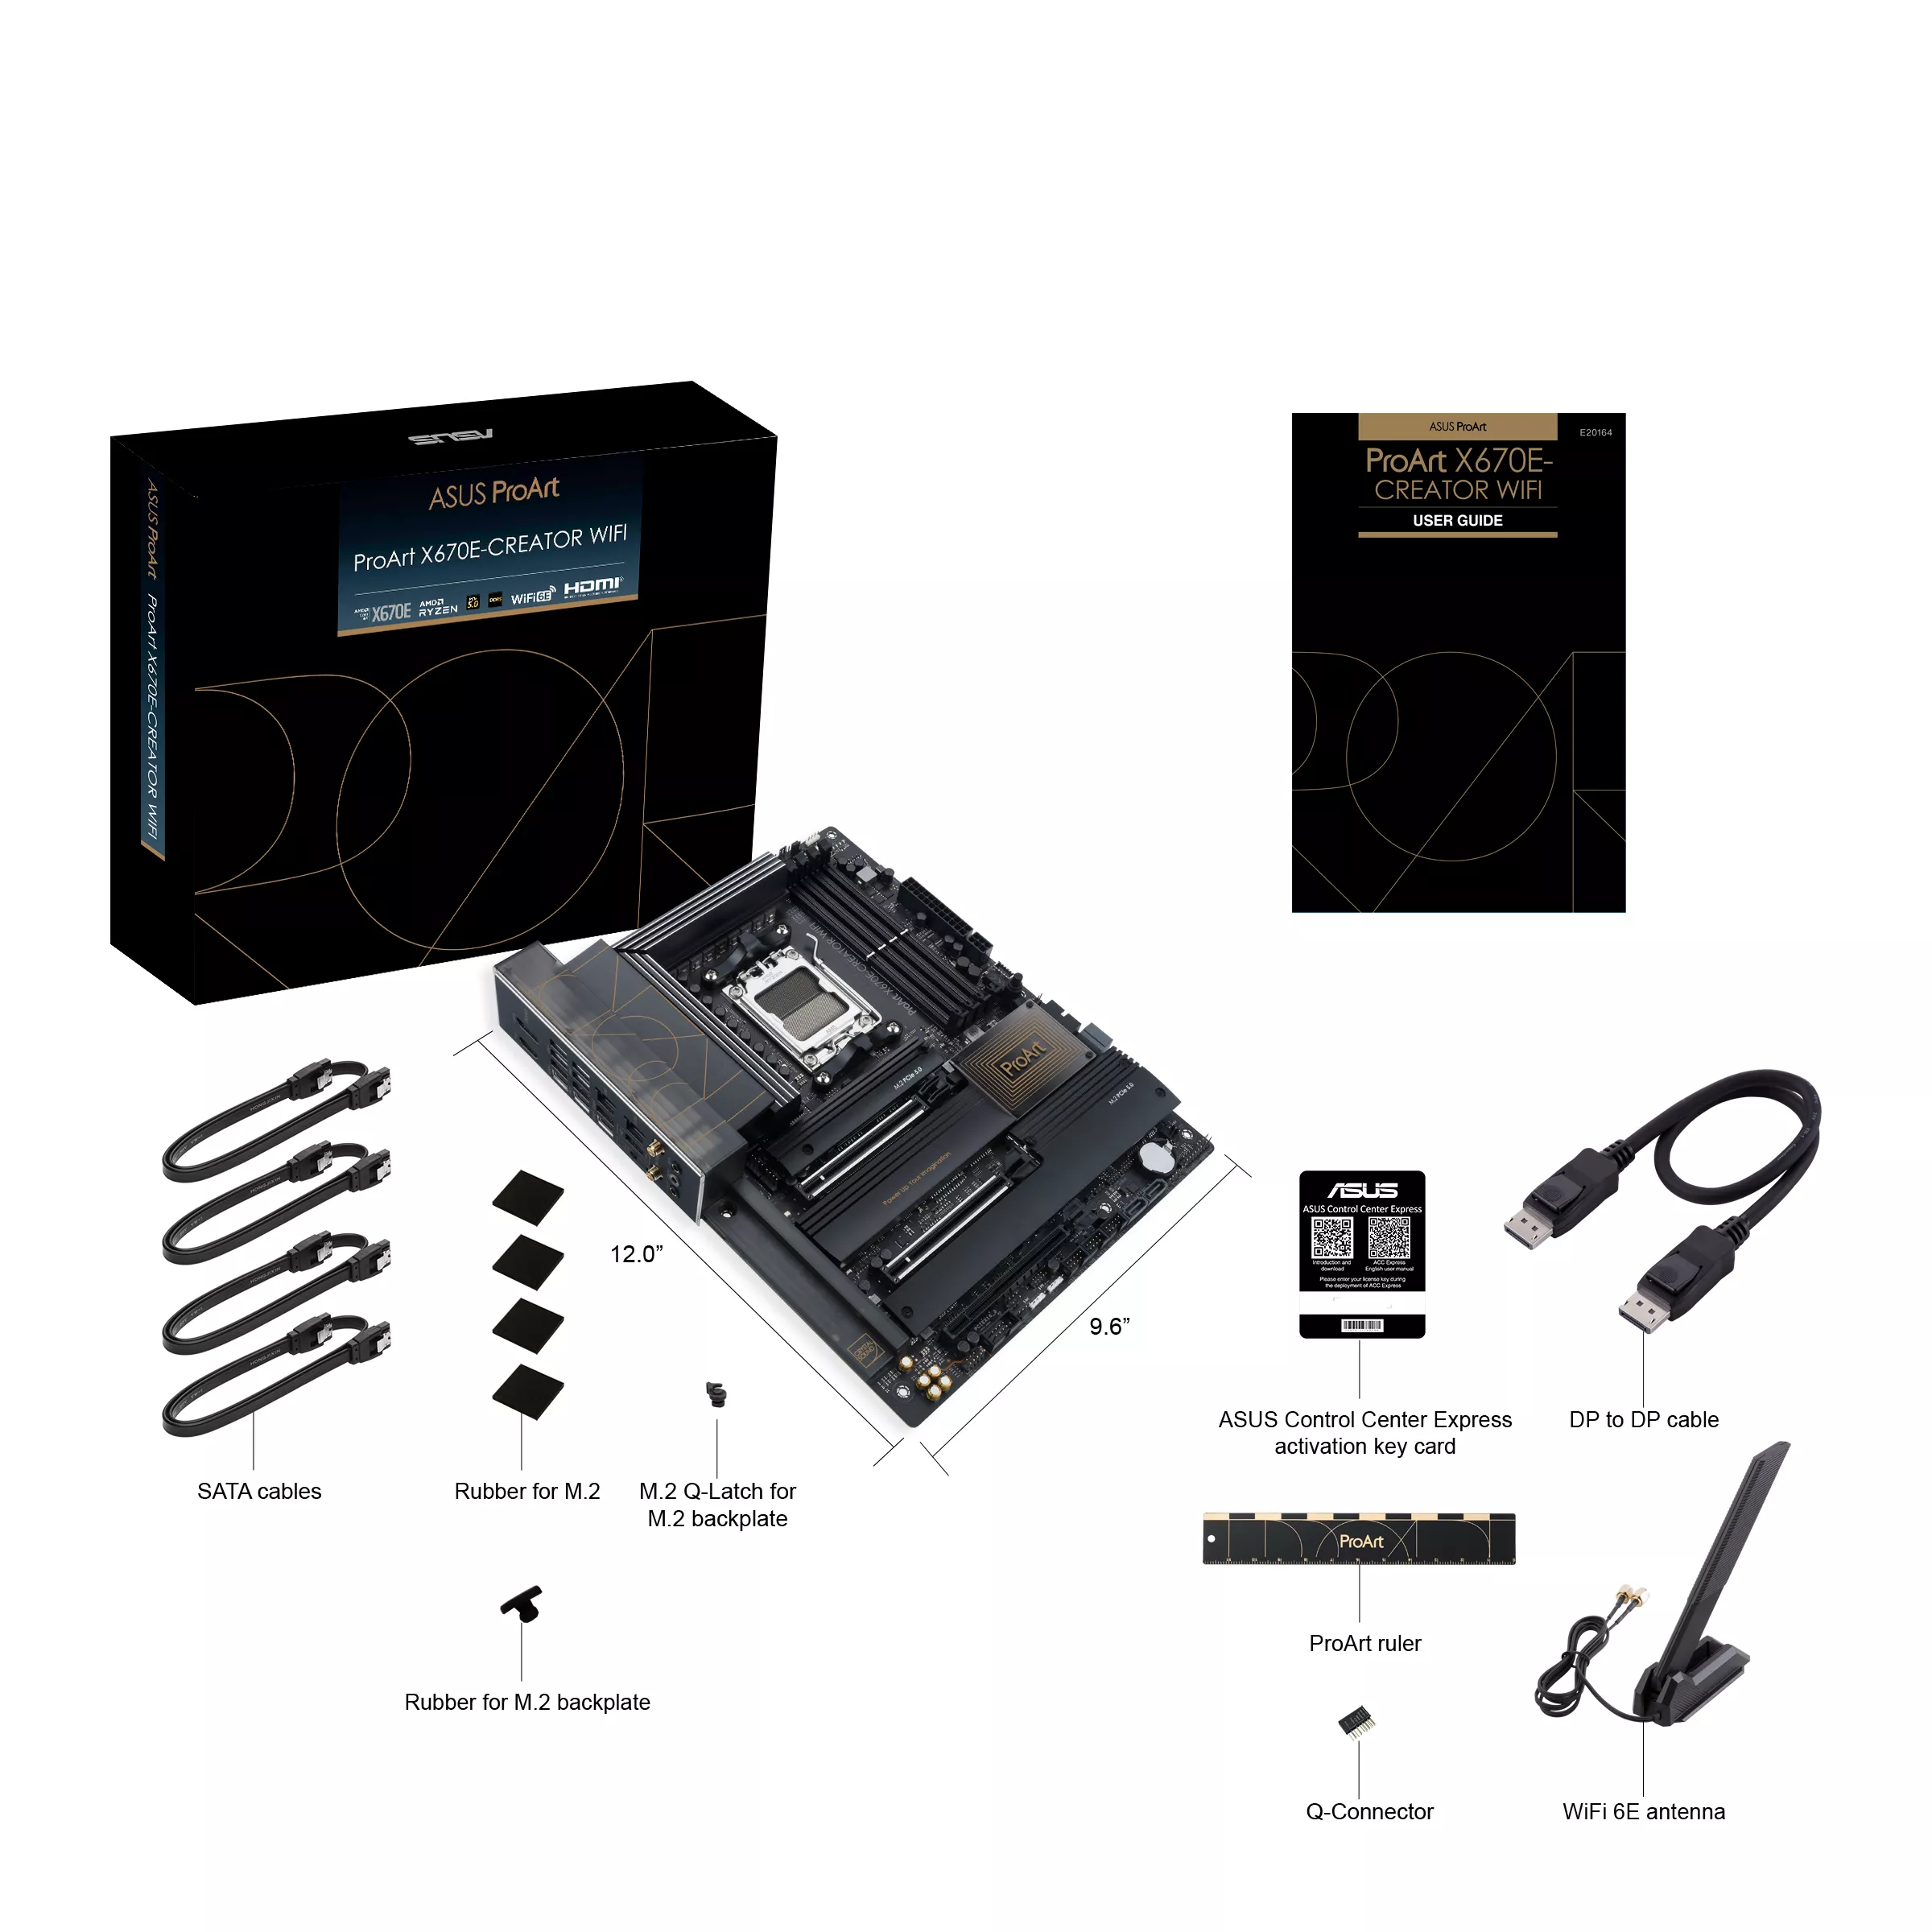 Vente ASUS ProArt X670E-CREATOR WIFI AM5 ATX MB 4xDIMM ASUS au meilleur prix - visuel 8